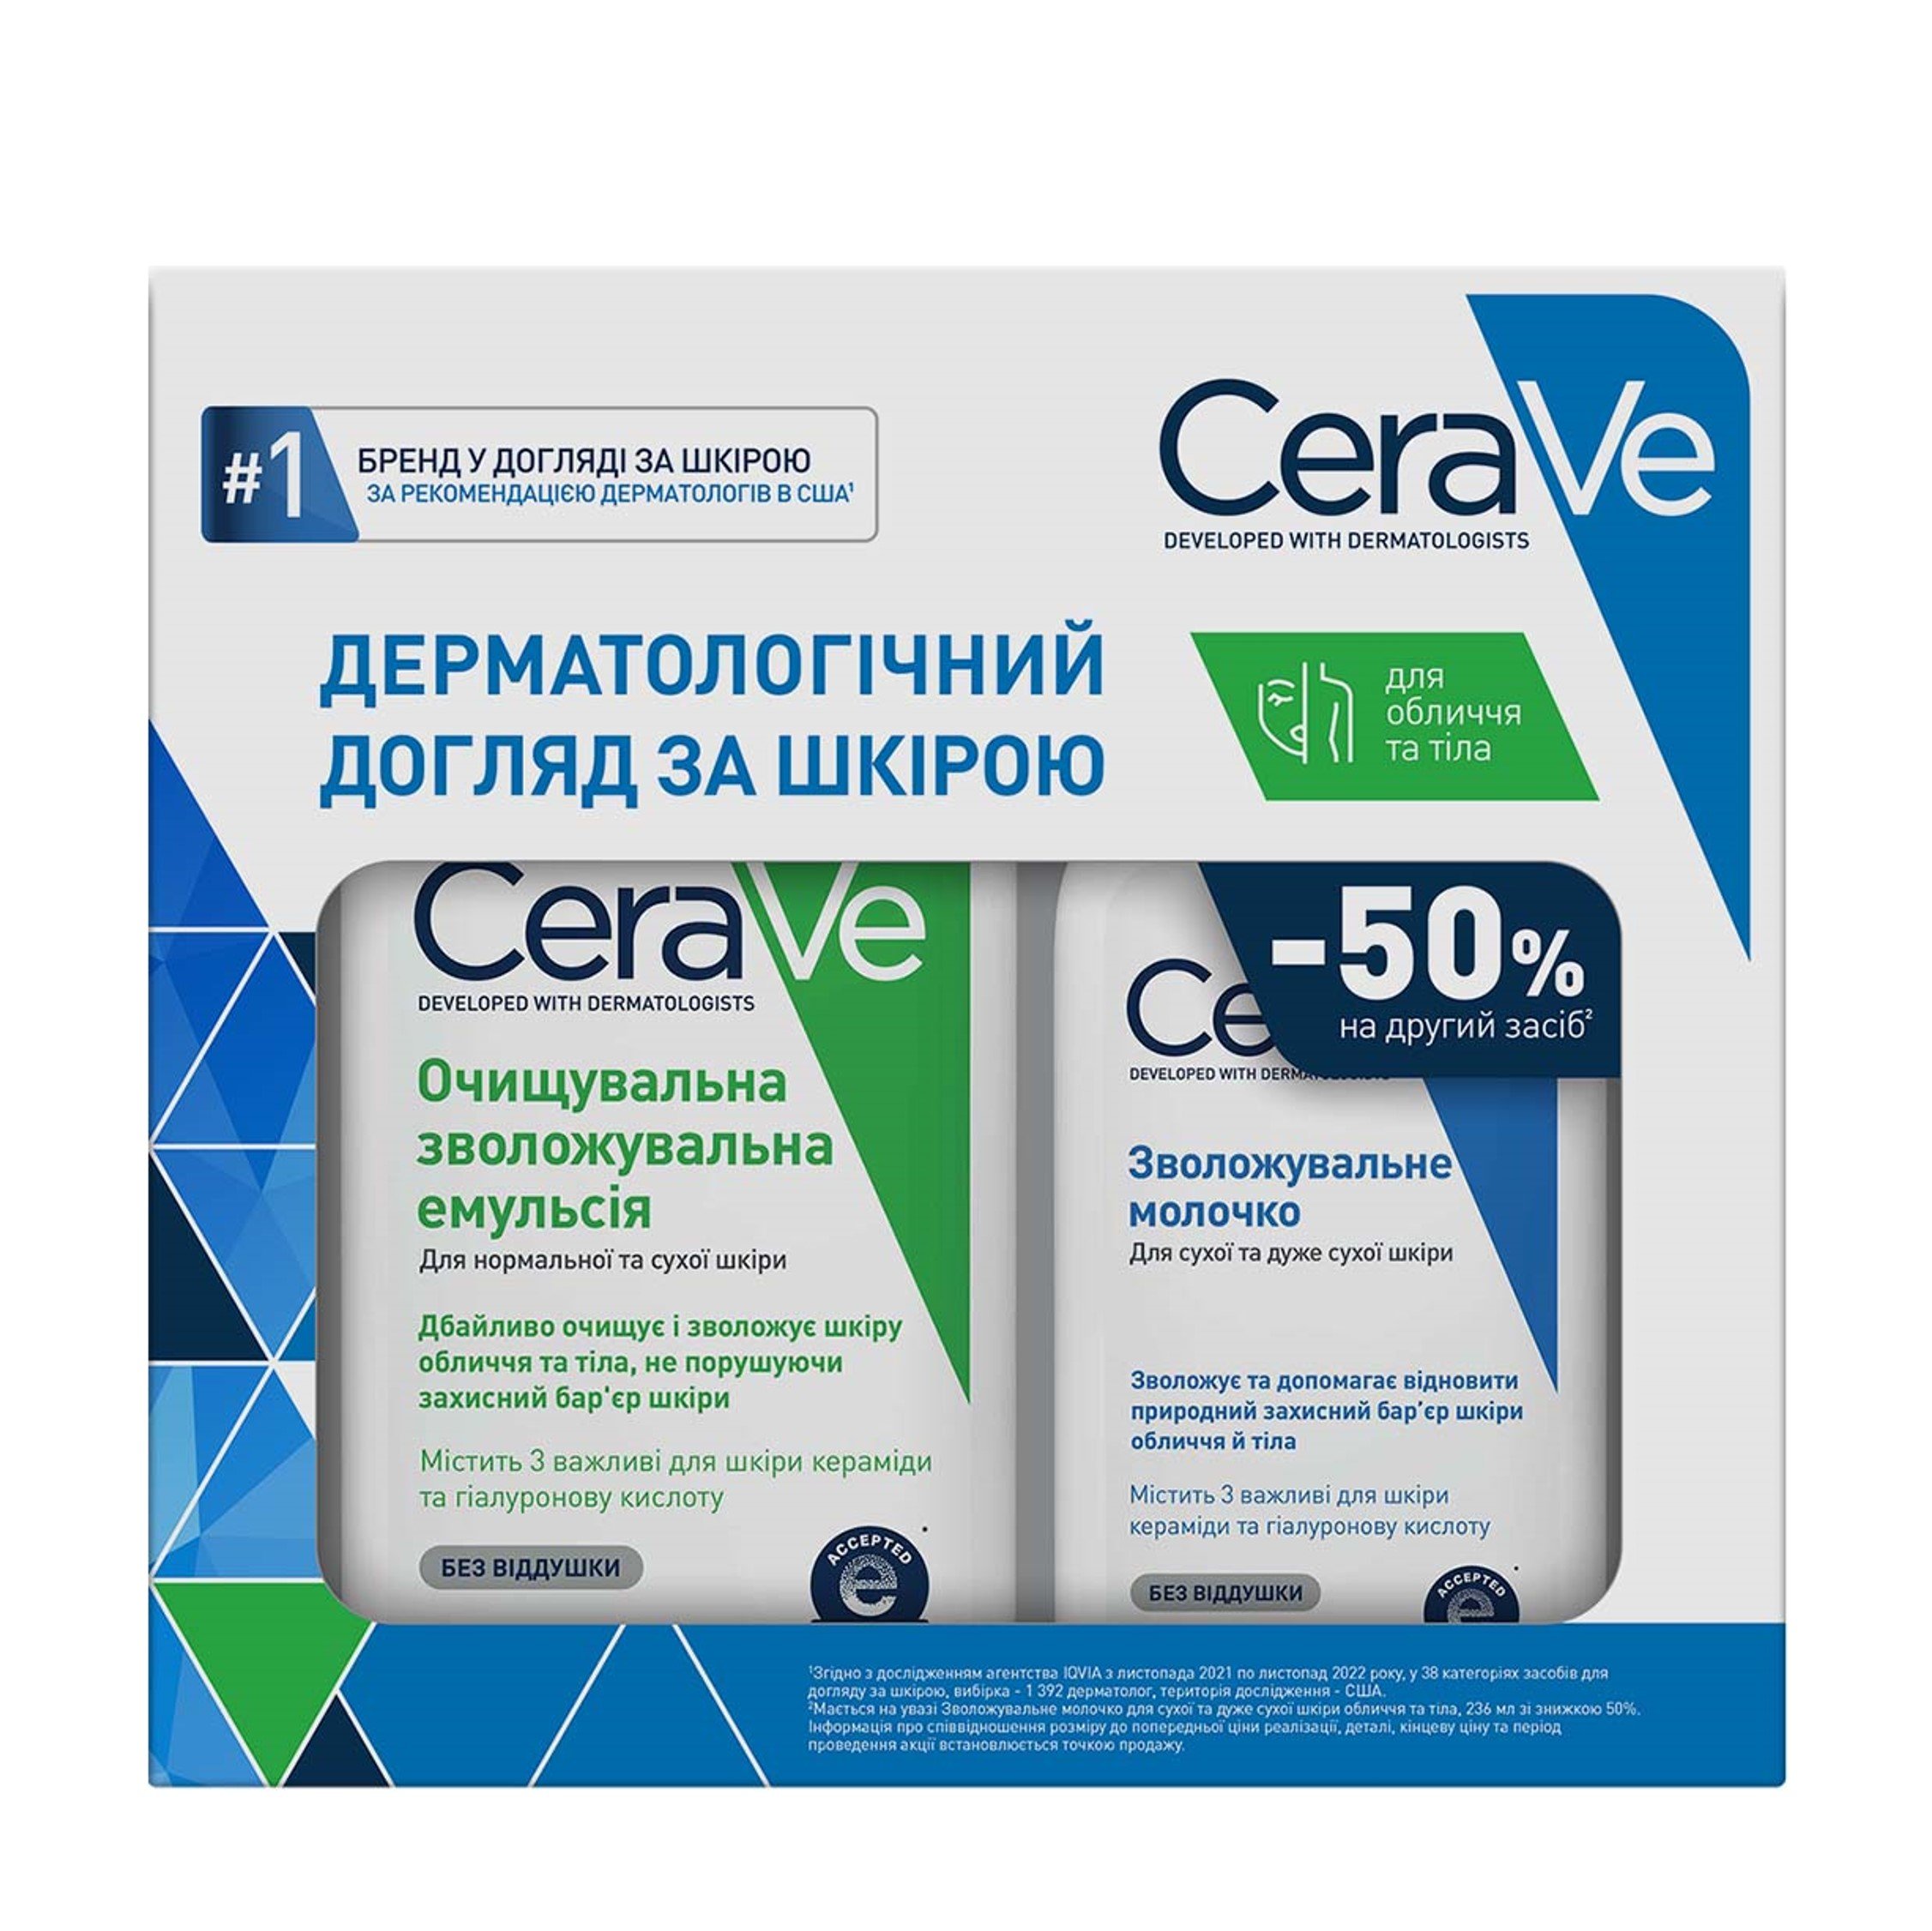 Набір для тіла CeraVe, очищувальна зволожувальна емульсія 47З мл + зволожувальне молочко для сухої шкіри 236 мл - фото 1